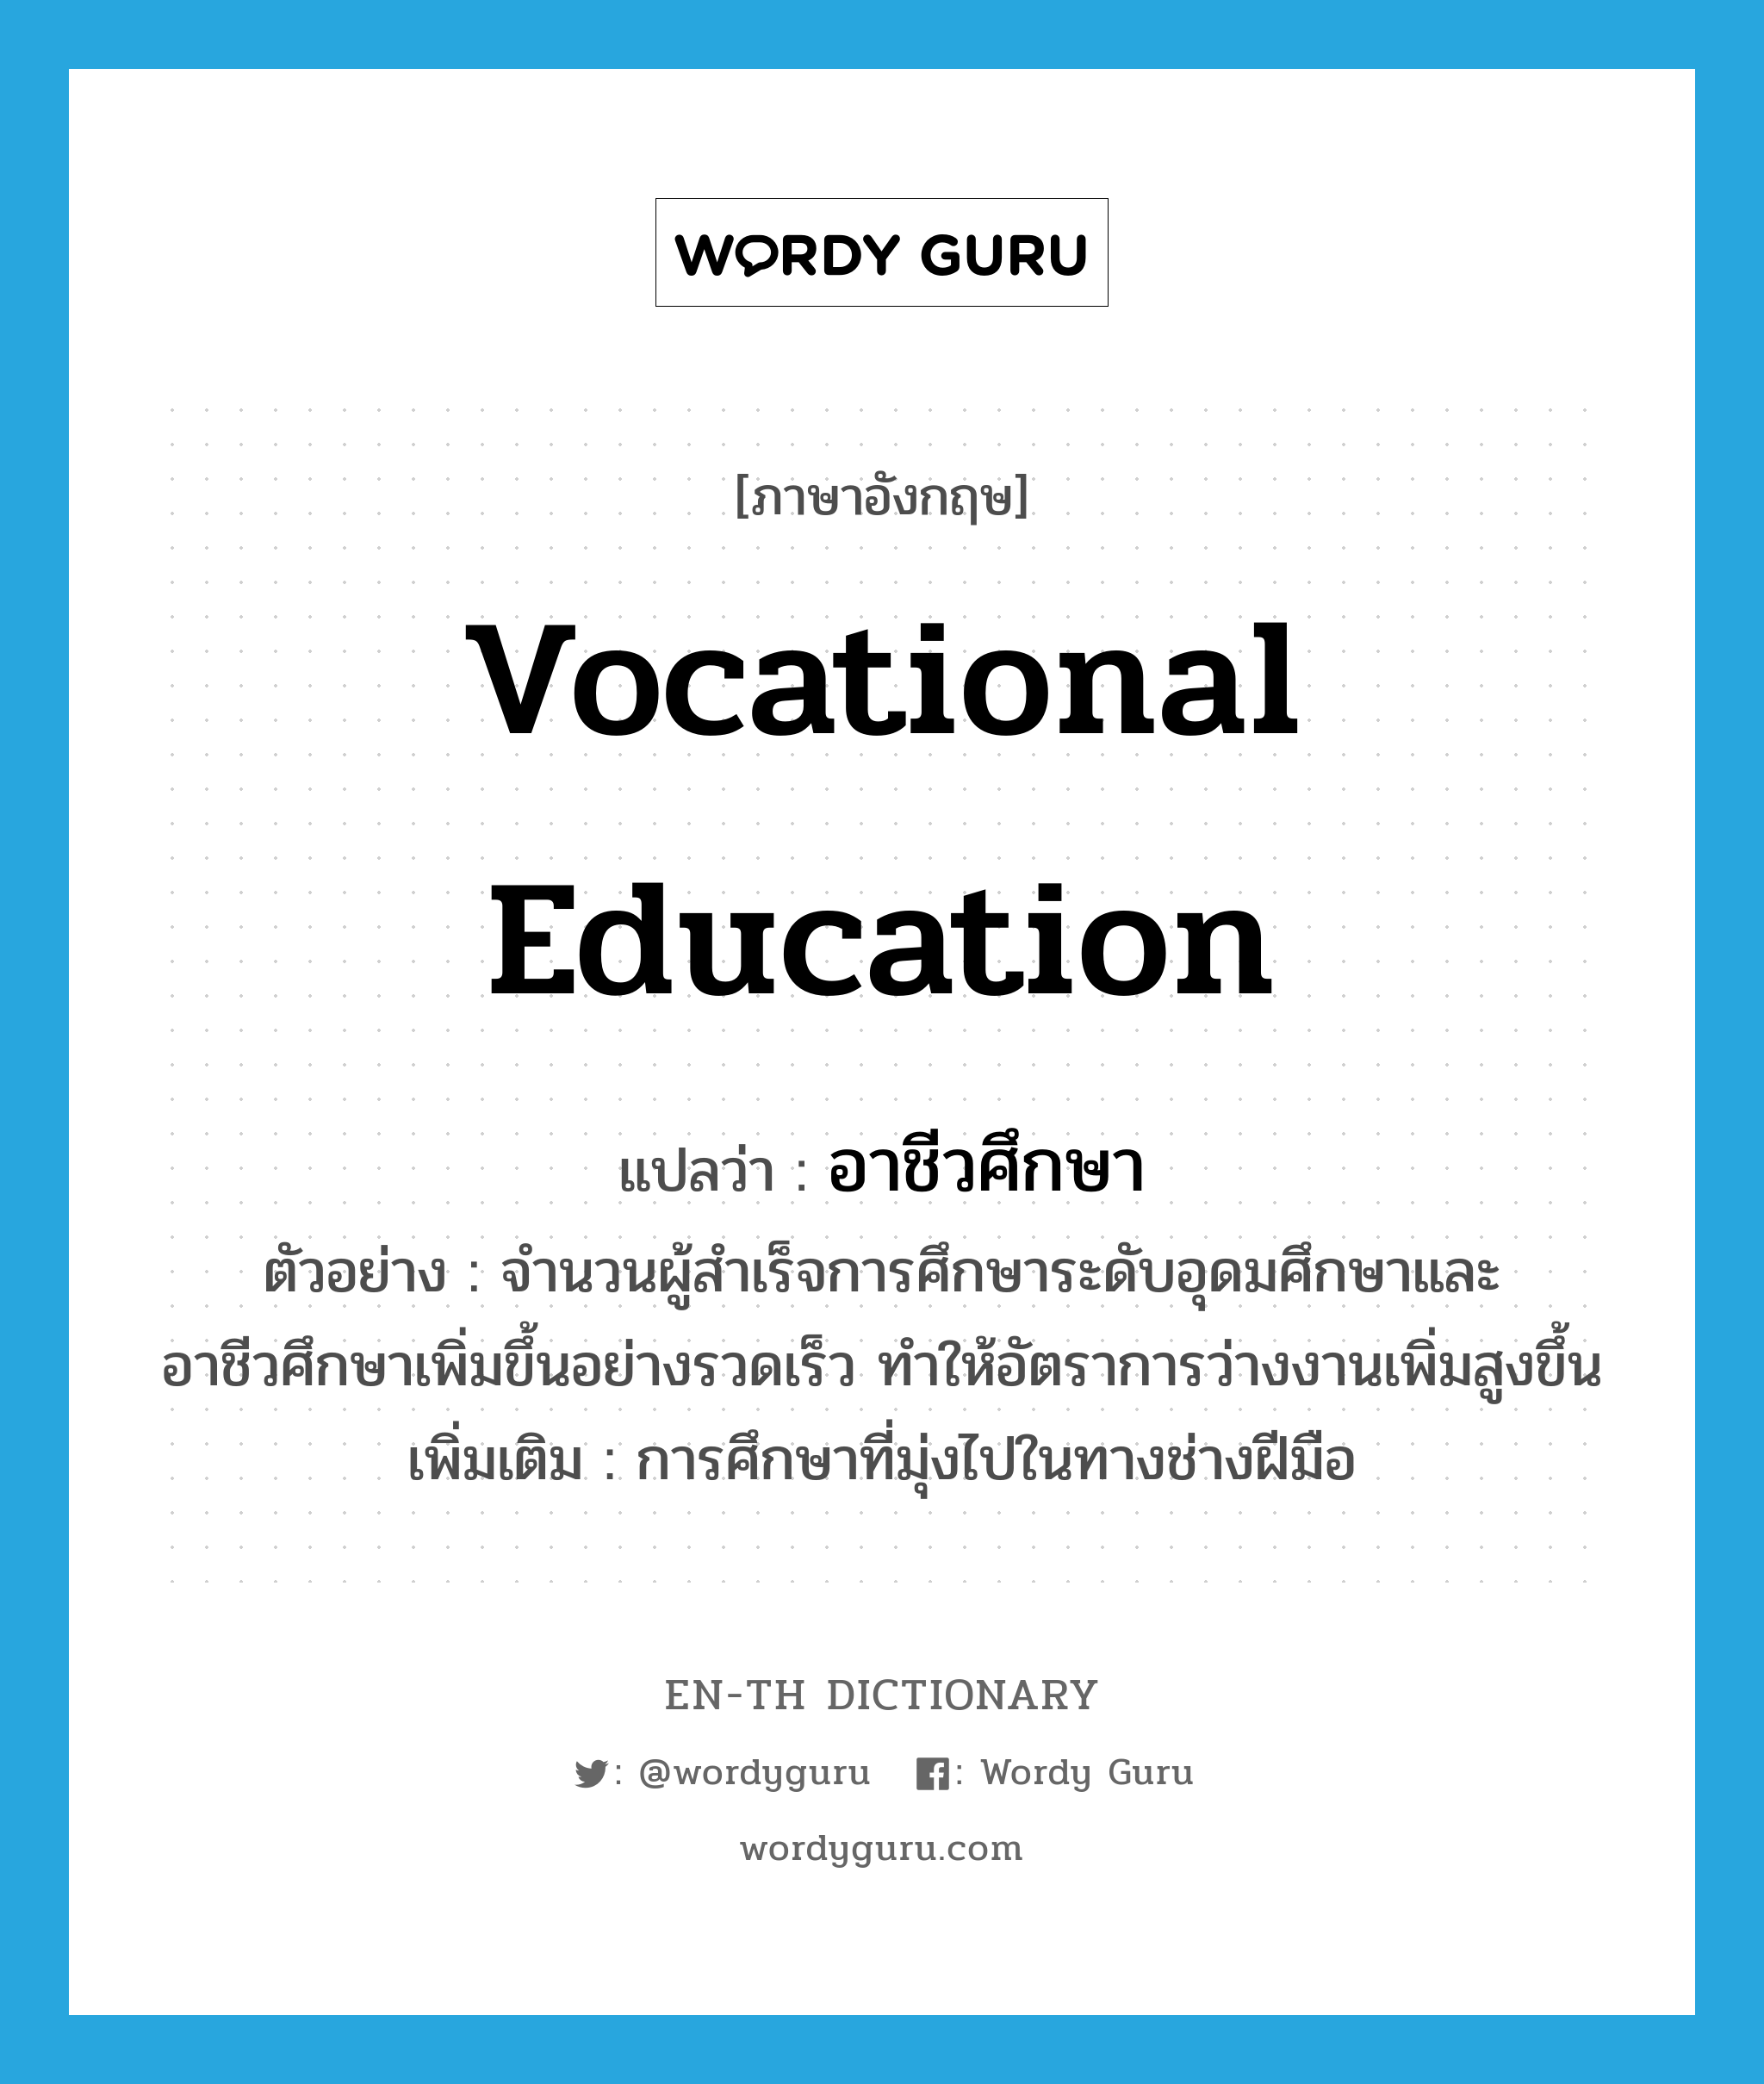 vocational education แปลว่า?, คำศัพท์ภาษาอังกฤษ vocational education แปลว่า อาชีวศึกษา ประเภท N ตัวอย่าง จำนวนผู้สำเร็จการศึกษาระดับอุดมศึกษาและอาชีวศึกษาเพิ่มขึ้นอย่างรวดเร็ว ทำให้อัตราการว่างงานเพิ่มสูงขึ้น เพิ่มเติม การศึกษาที่มุ่งไปในทางช่างฝีมือ หมวด N